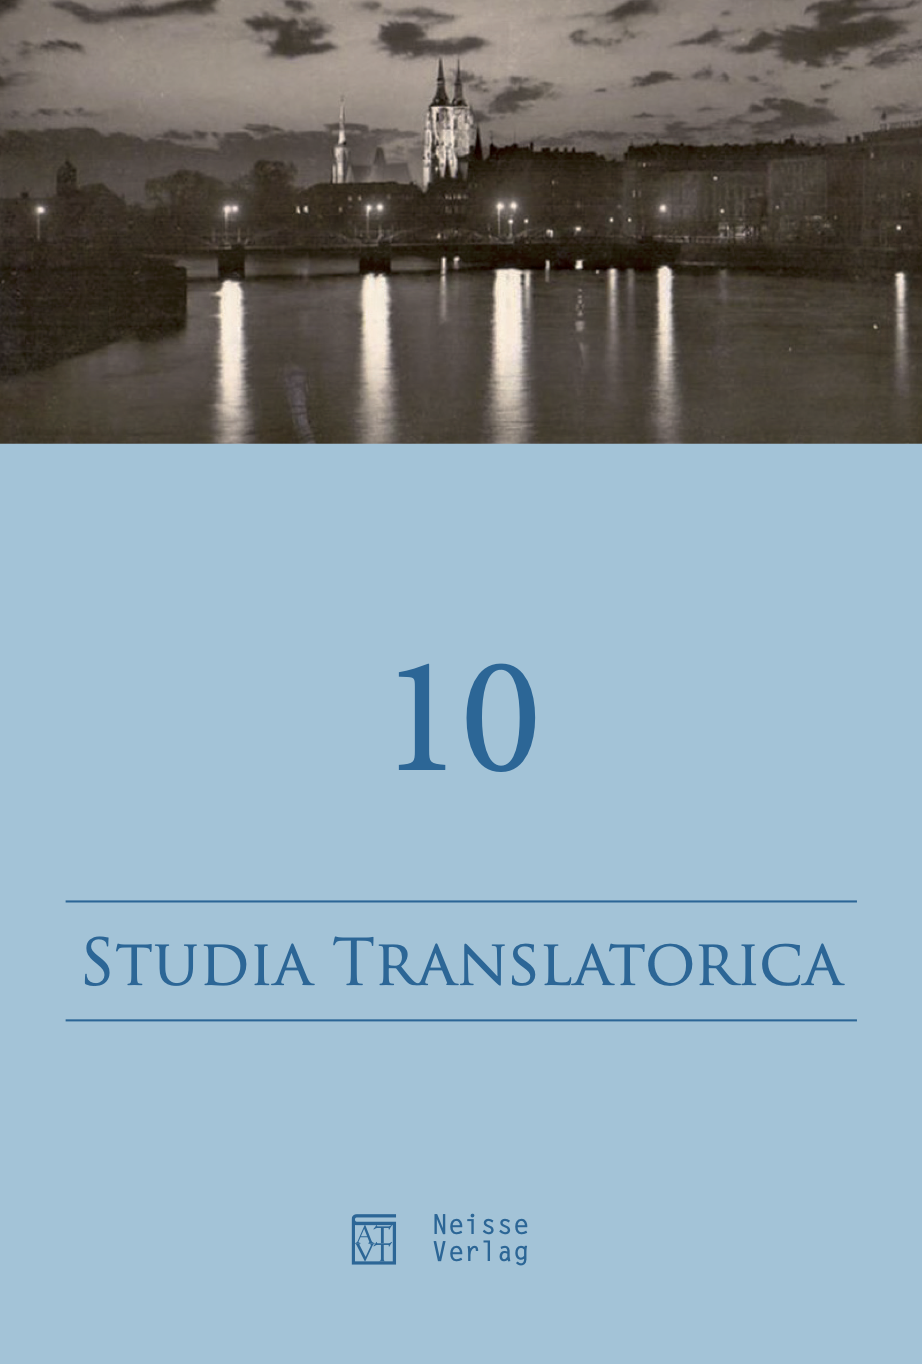 Stolze, Radegundis/ Stanley, John/ Cercel, Larisa (eds.) (2015): Translation Hermeneutics. The First Symposium. Bucharest: zeta Books. 464 pp. Cover Image